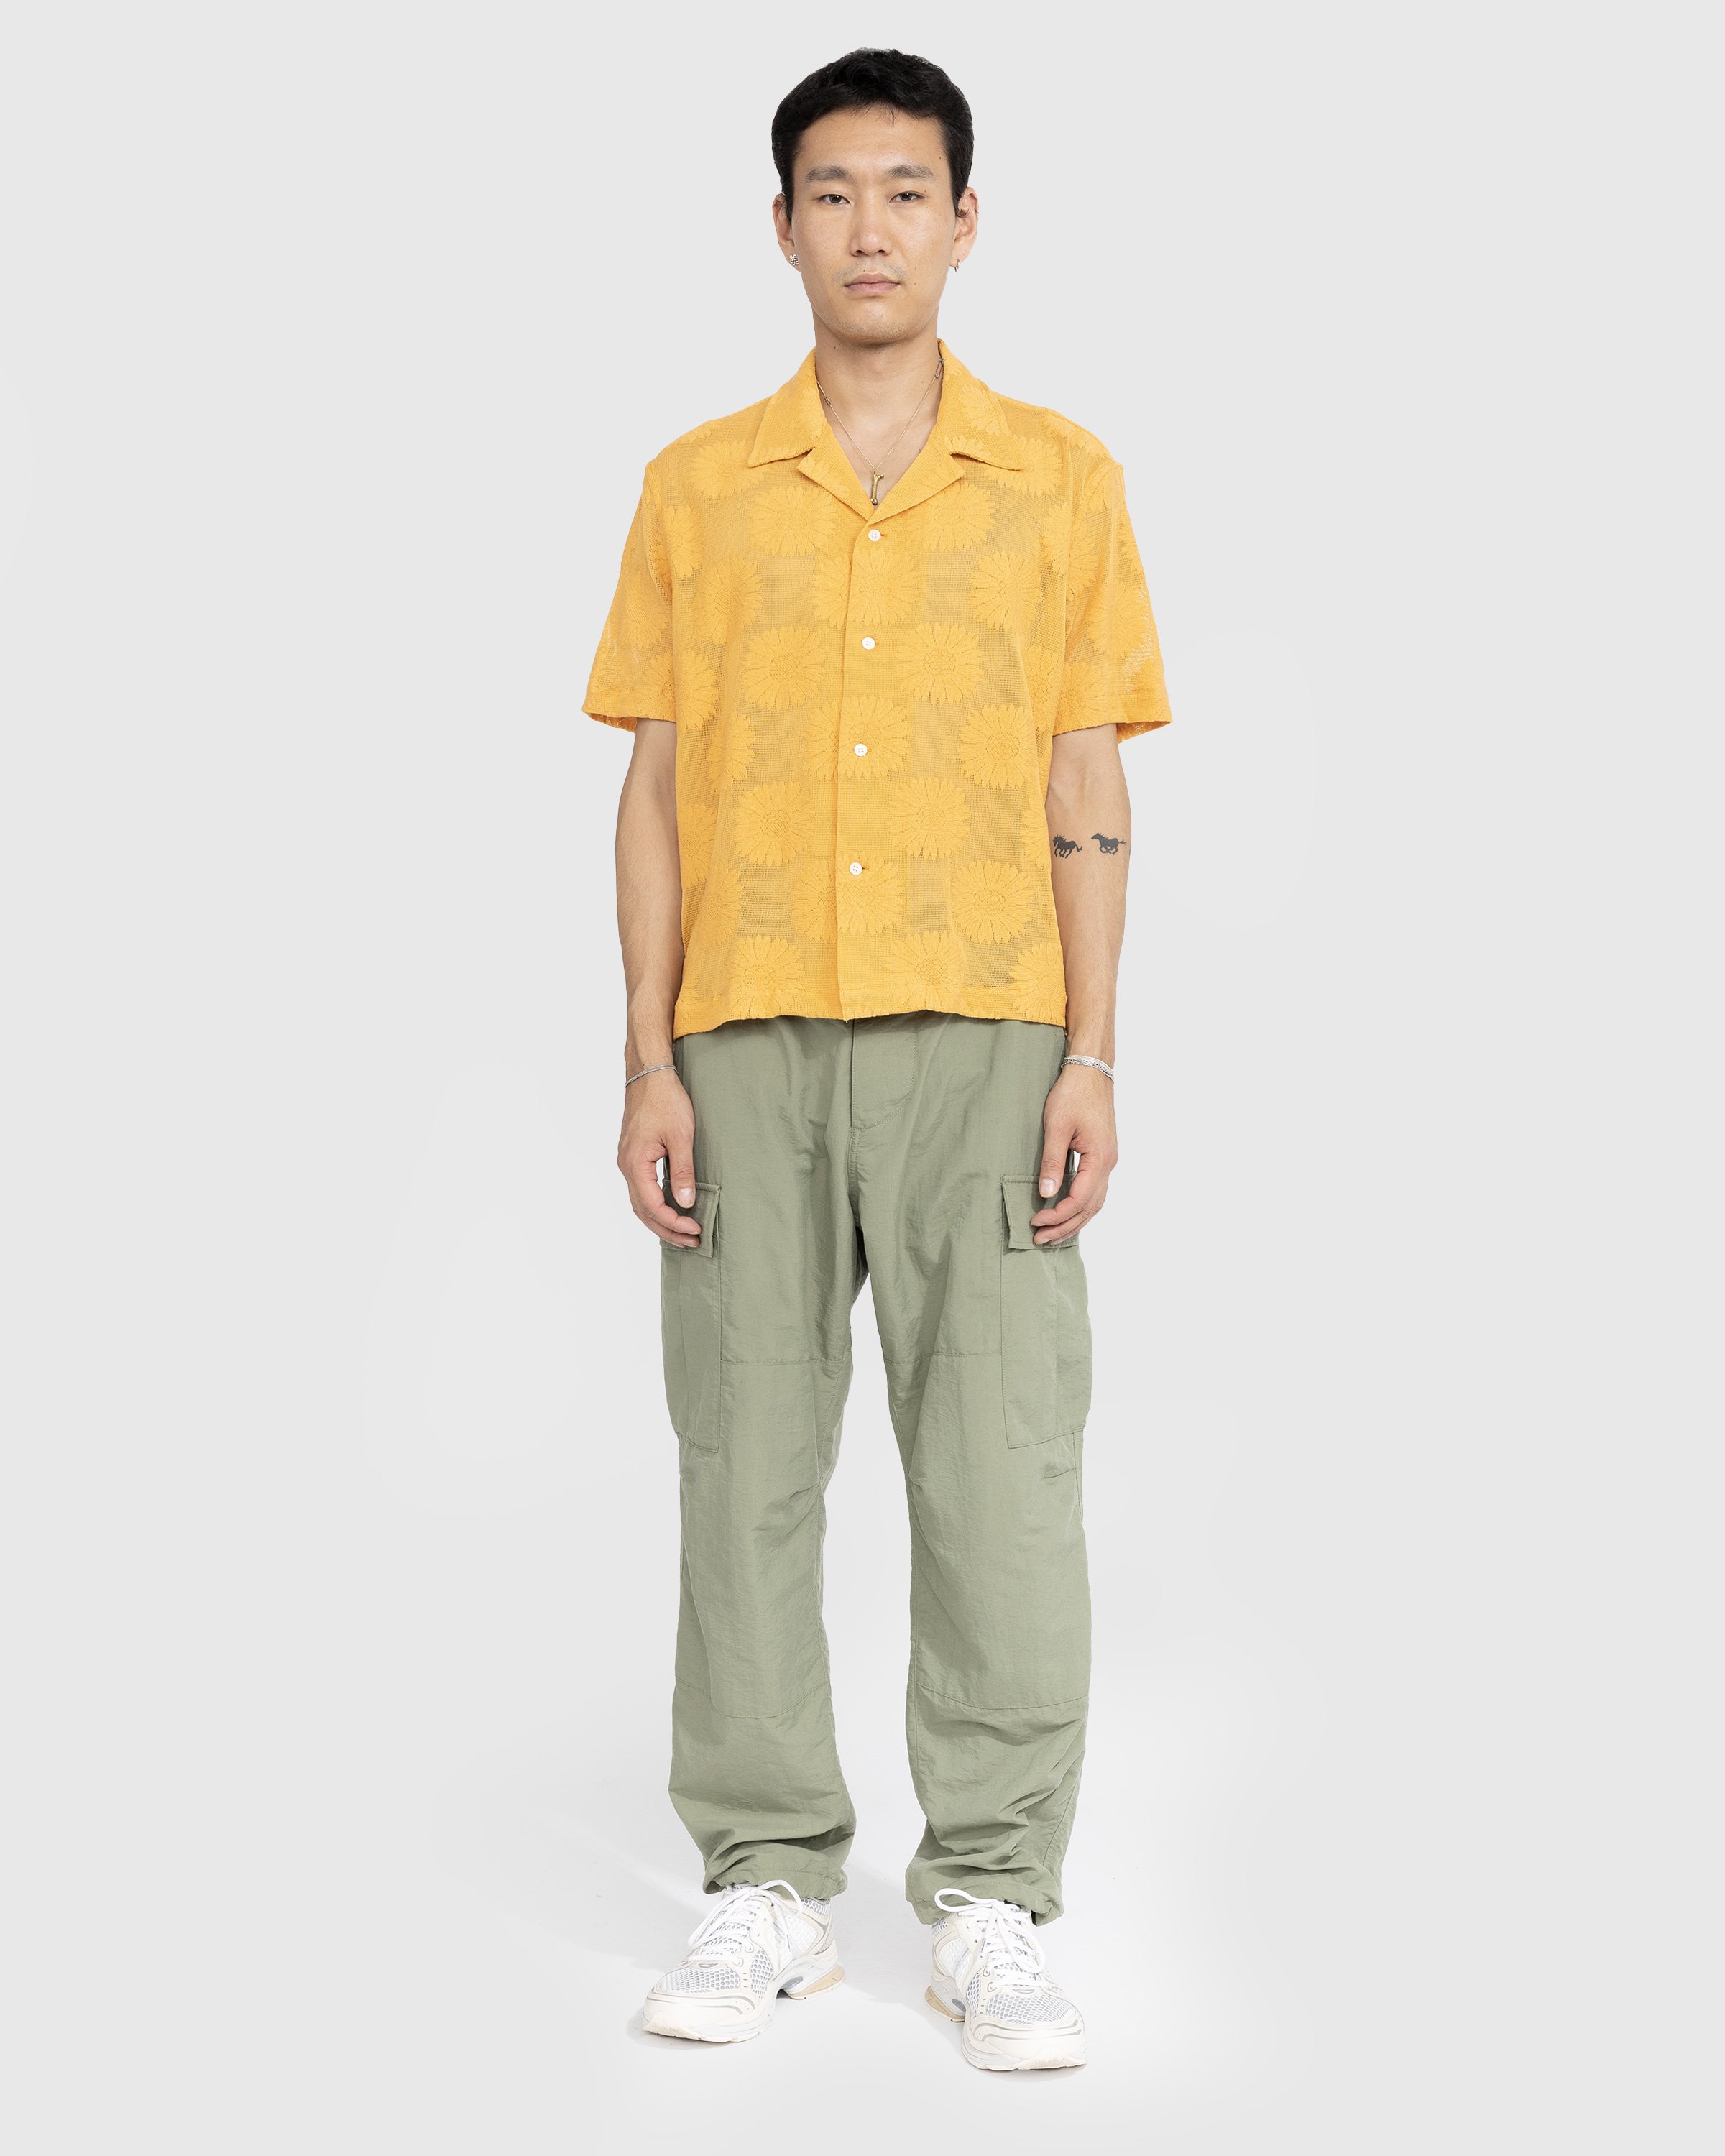 Bode - Sunflower Lace Shortsleeve Shirt - Clothing - Yellow - Image 2